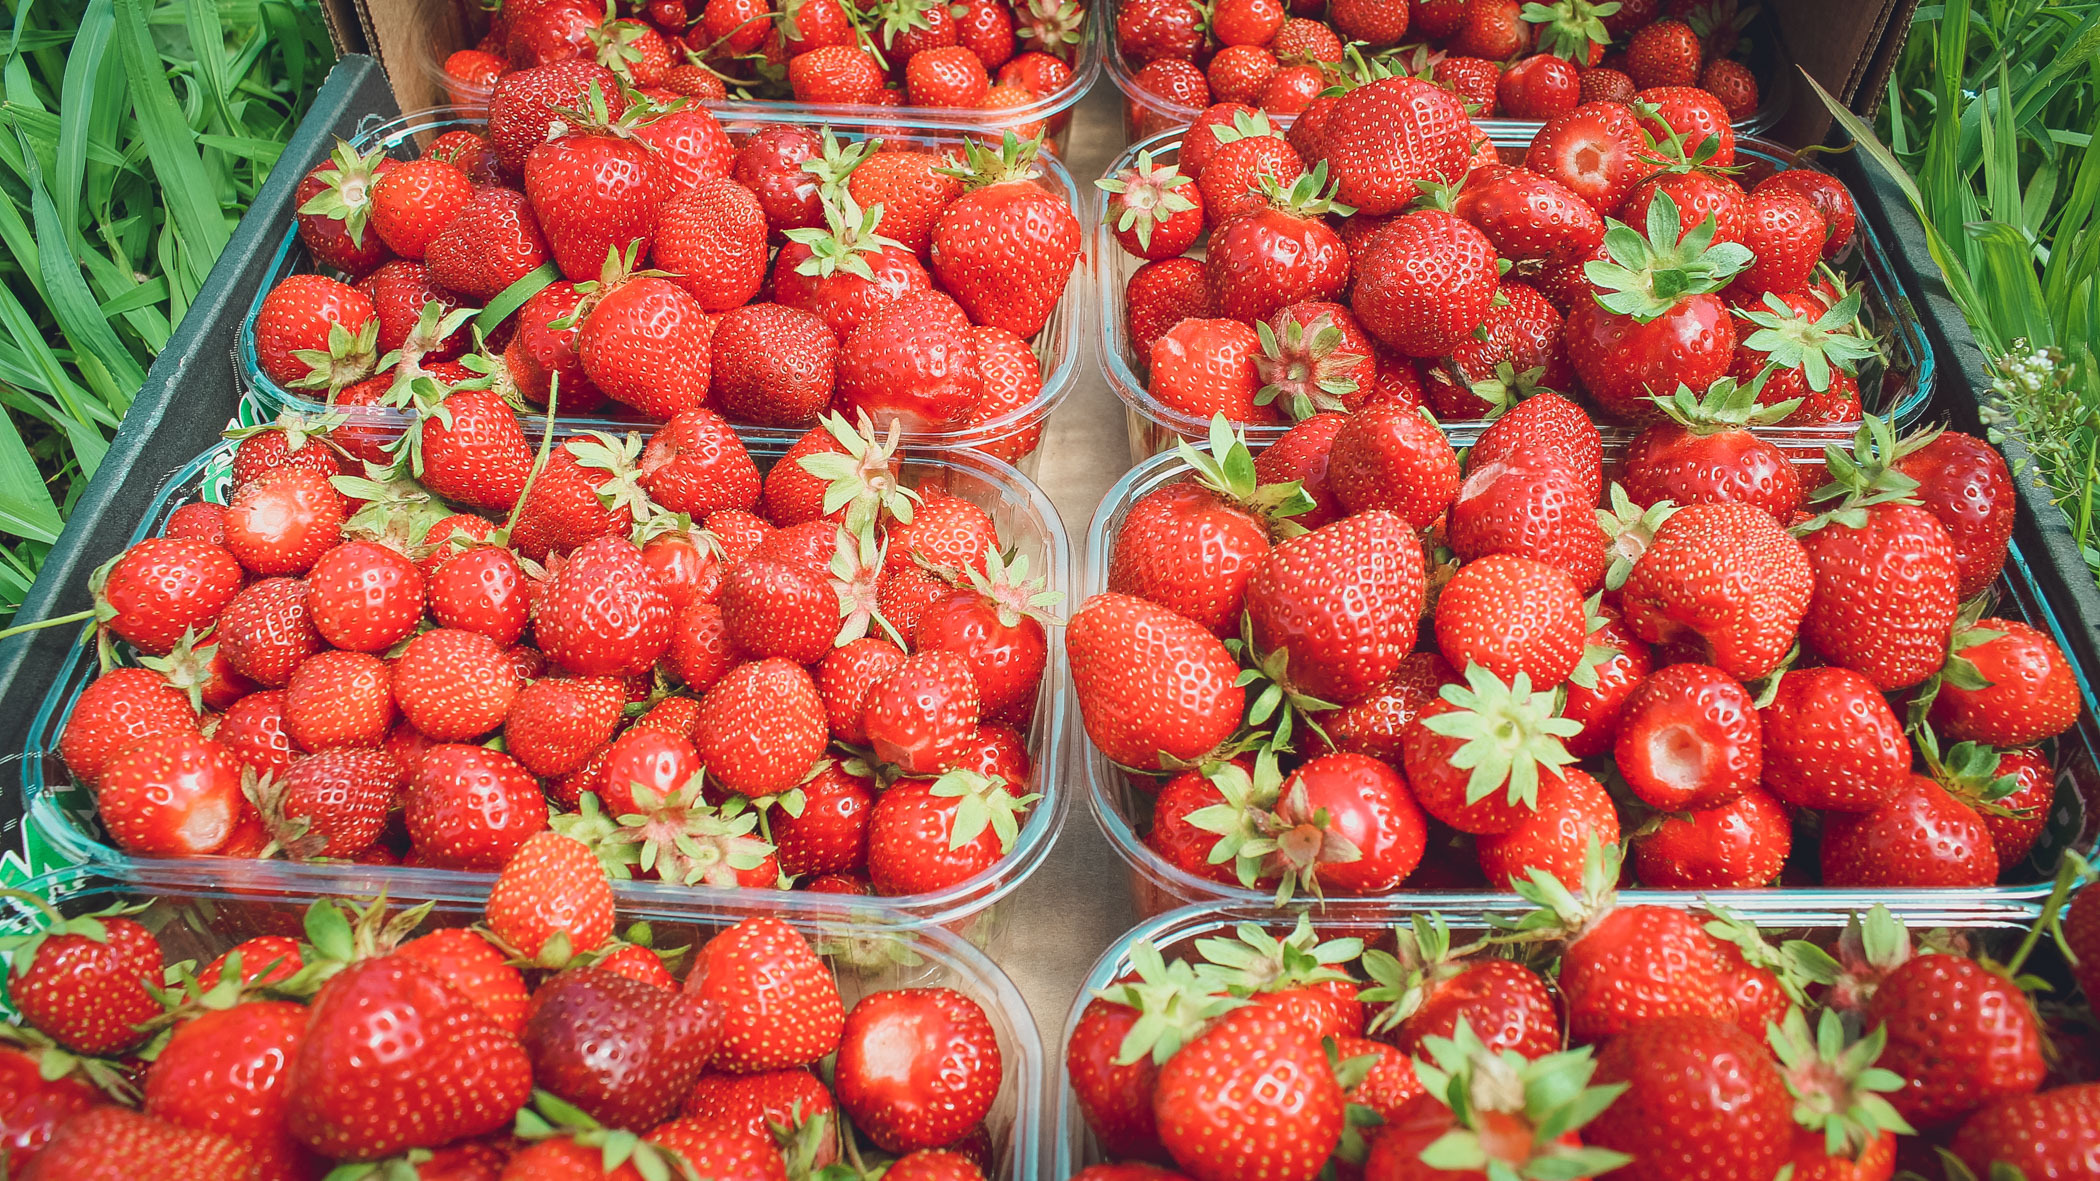 Тюменцам предлагают заработать на сборе ягод до 300 тысяч рублей